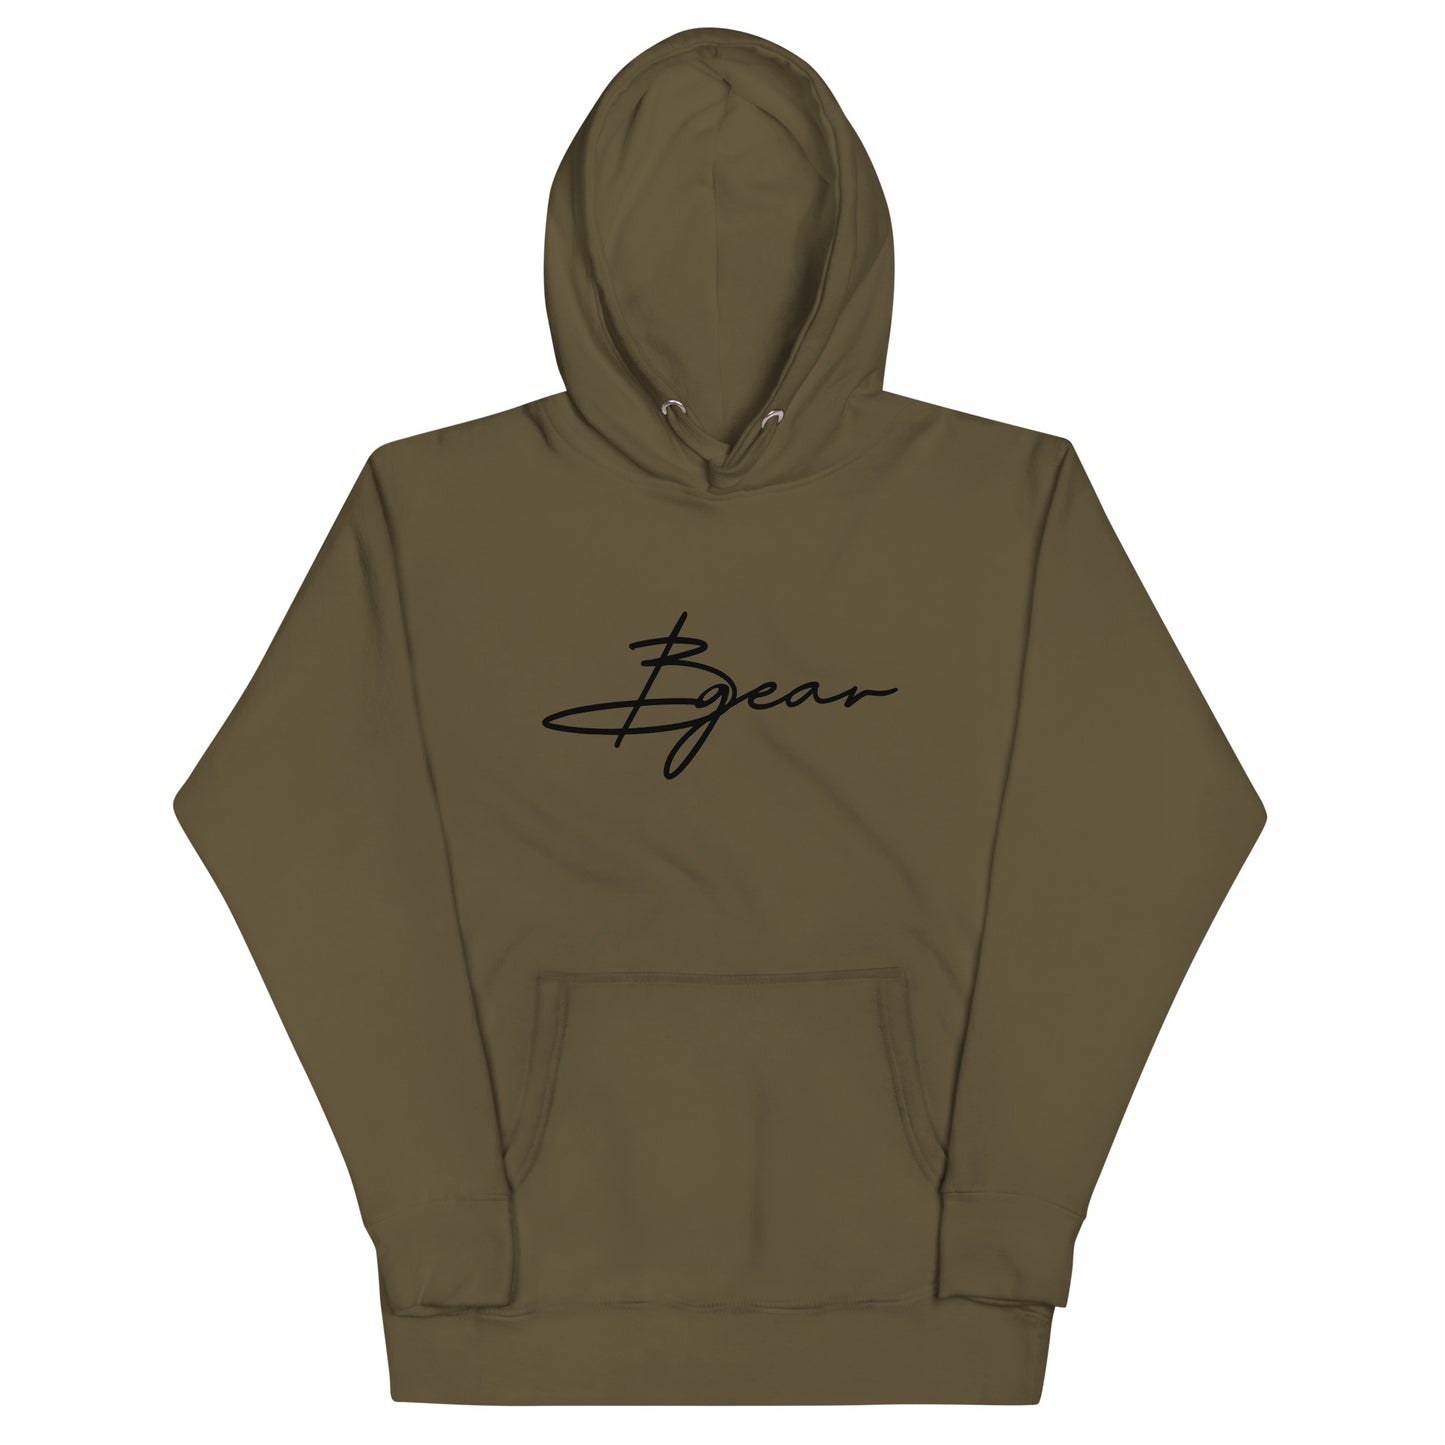 BGear Signature Hoodie Sweatshirt - Unisex